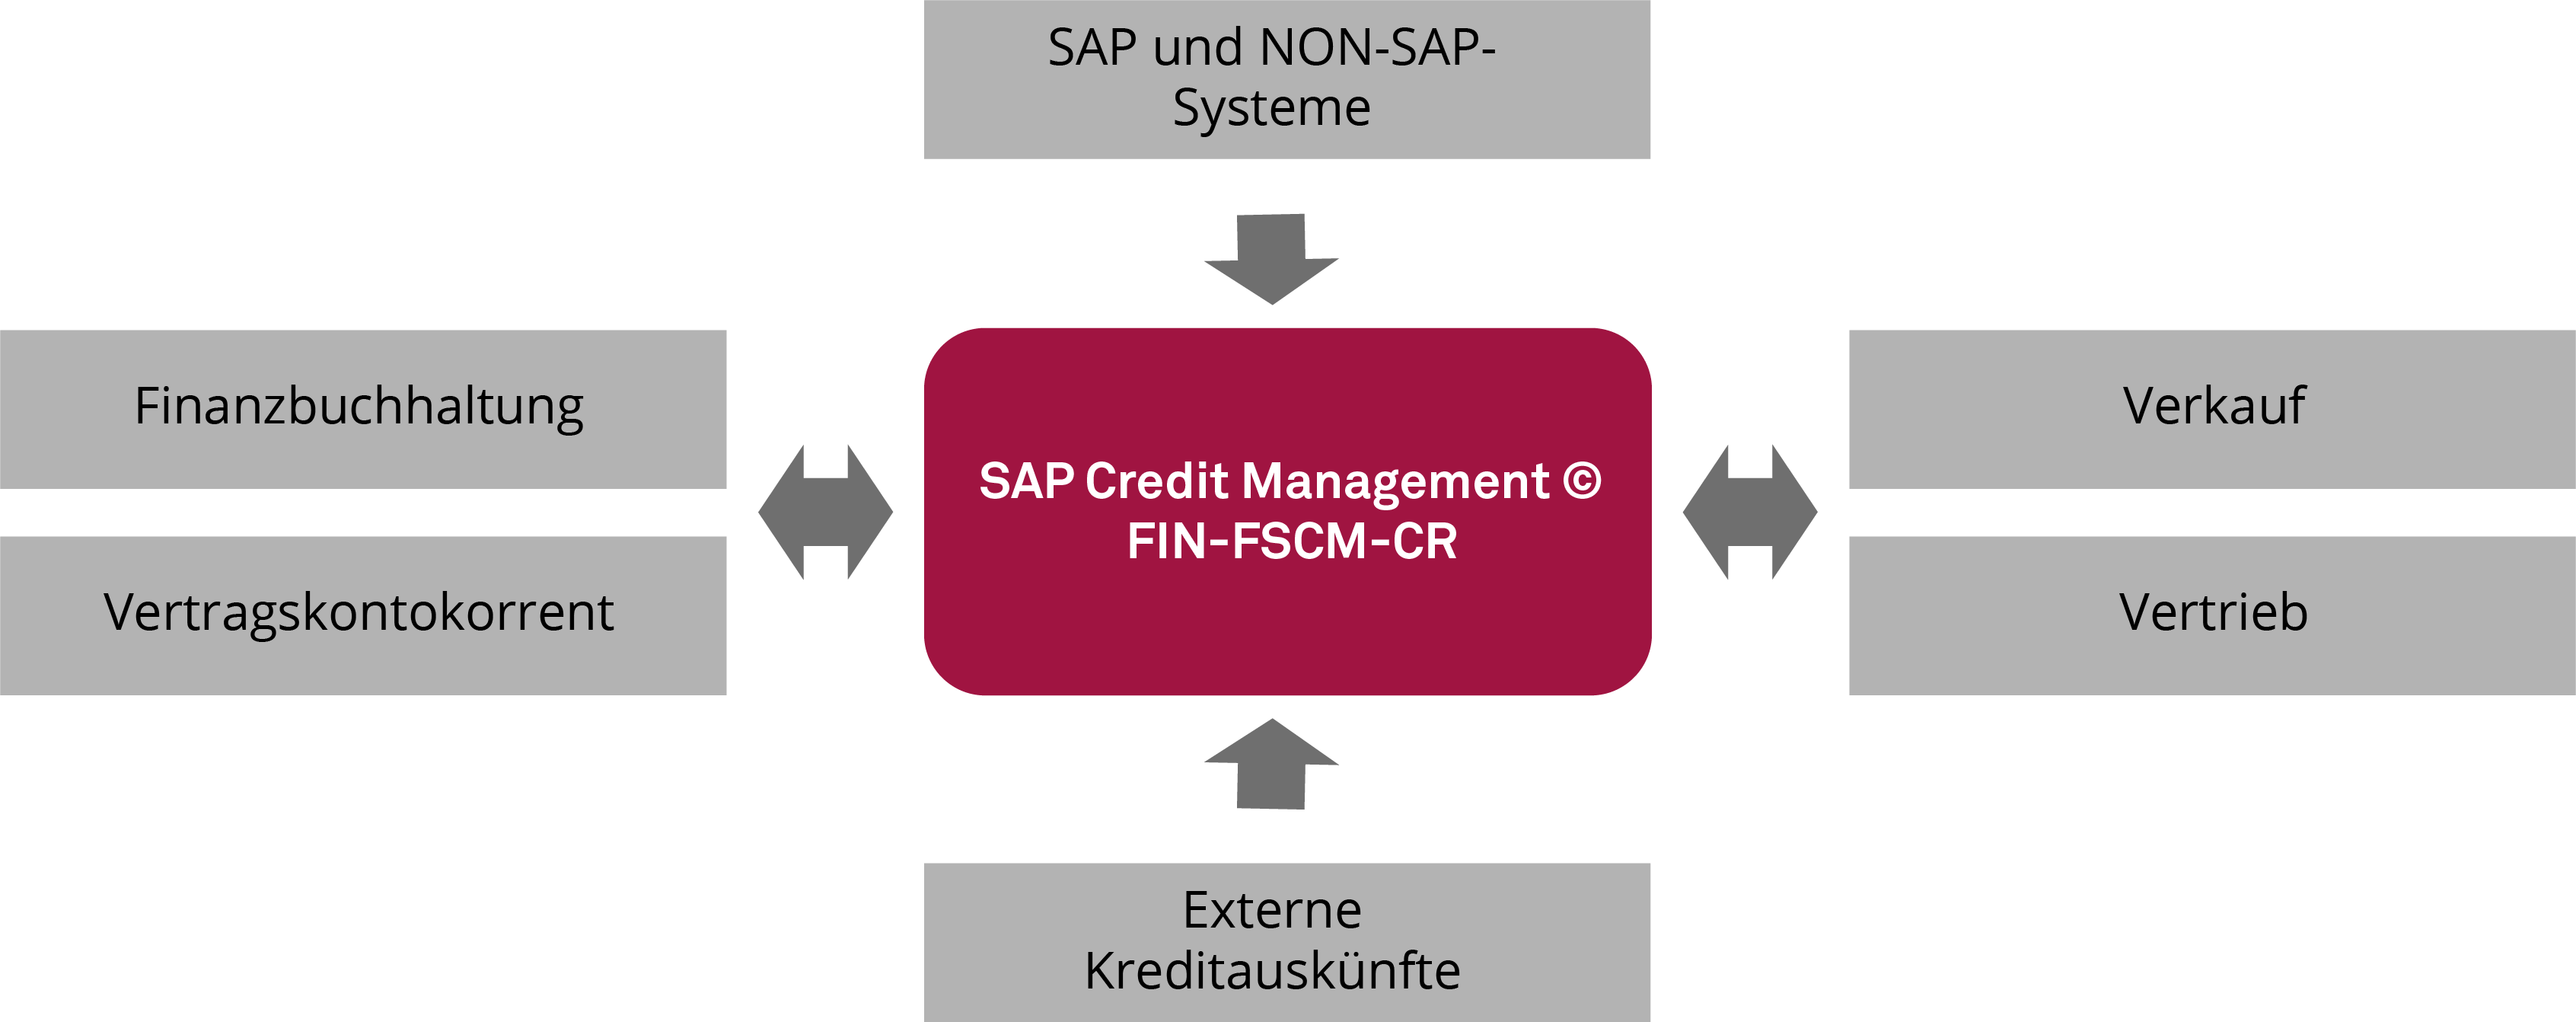 Um ein umfassendes Gesamtbild von der Kreditwürdigkeit des Kunden zu bekommen, beschränkt sich die Datenbasis des SAP Credit Managements nicht nur auf Belege aus der Buchhaltung. 